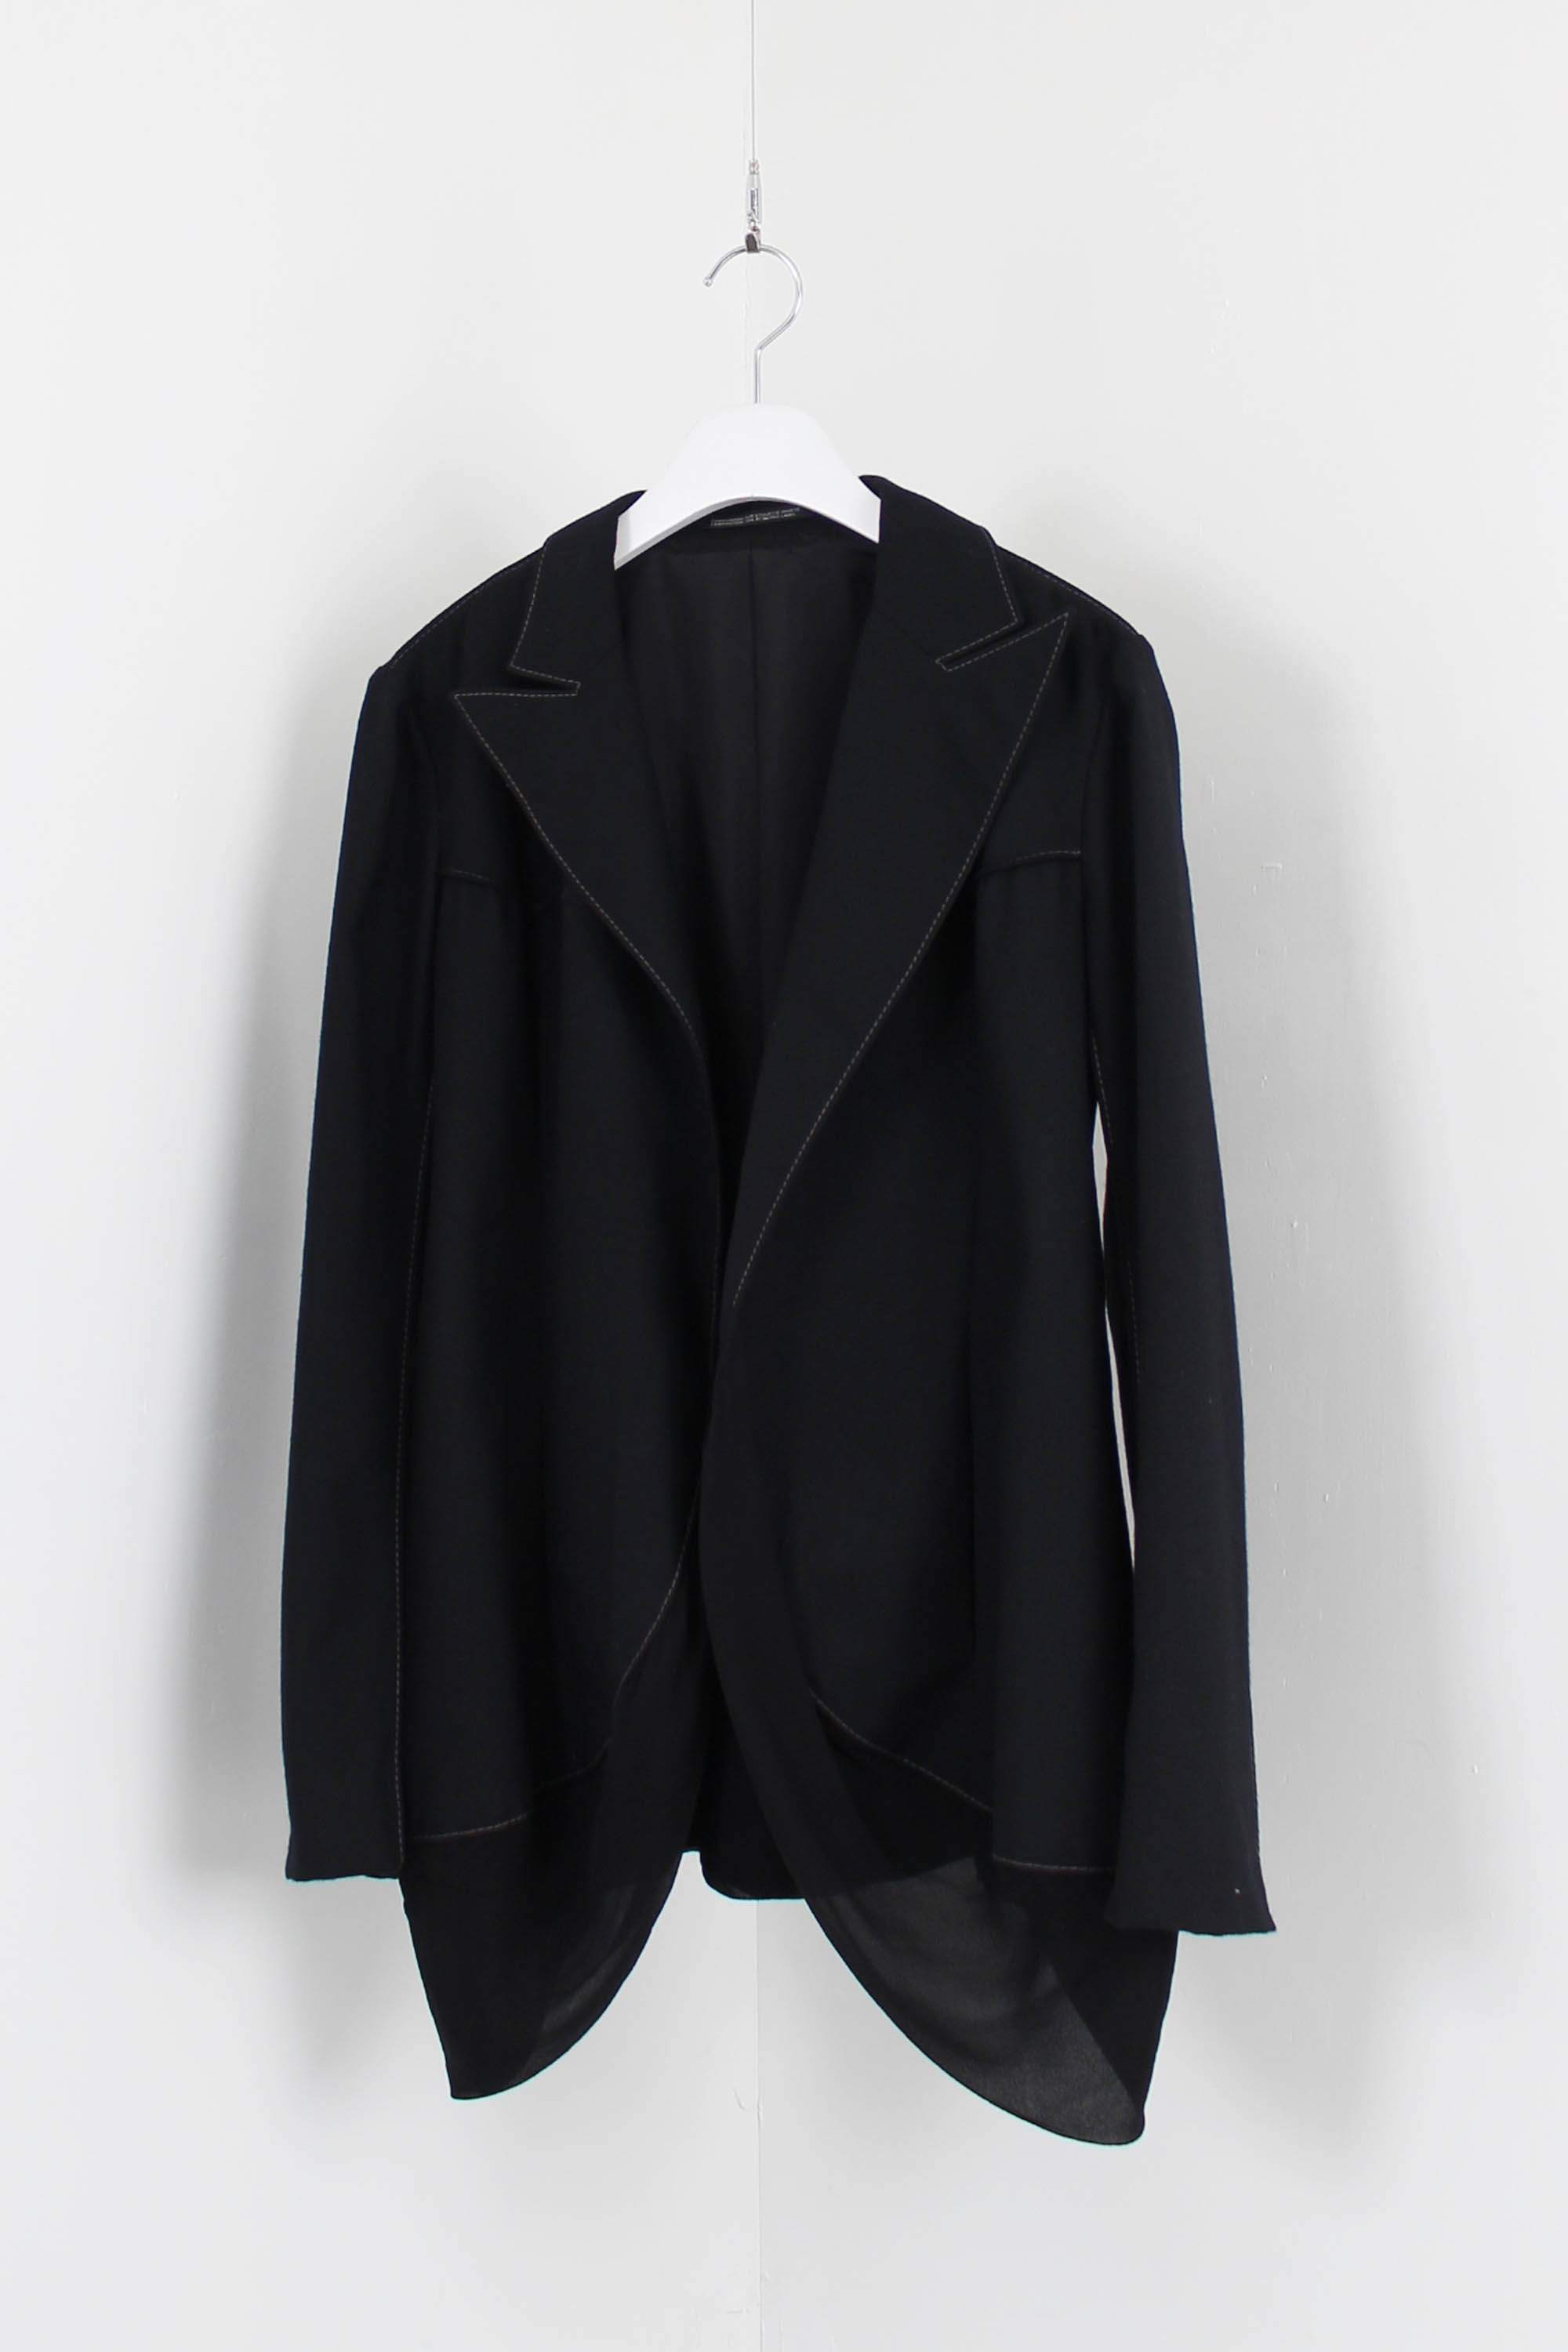 Yohji Yamamoto layered jacket